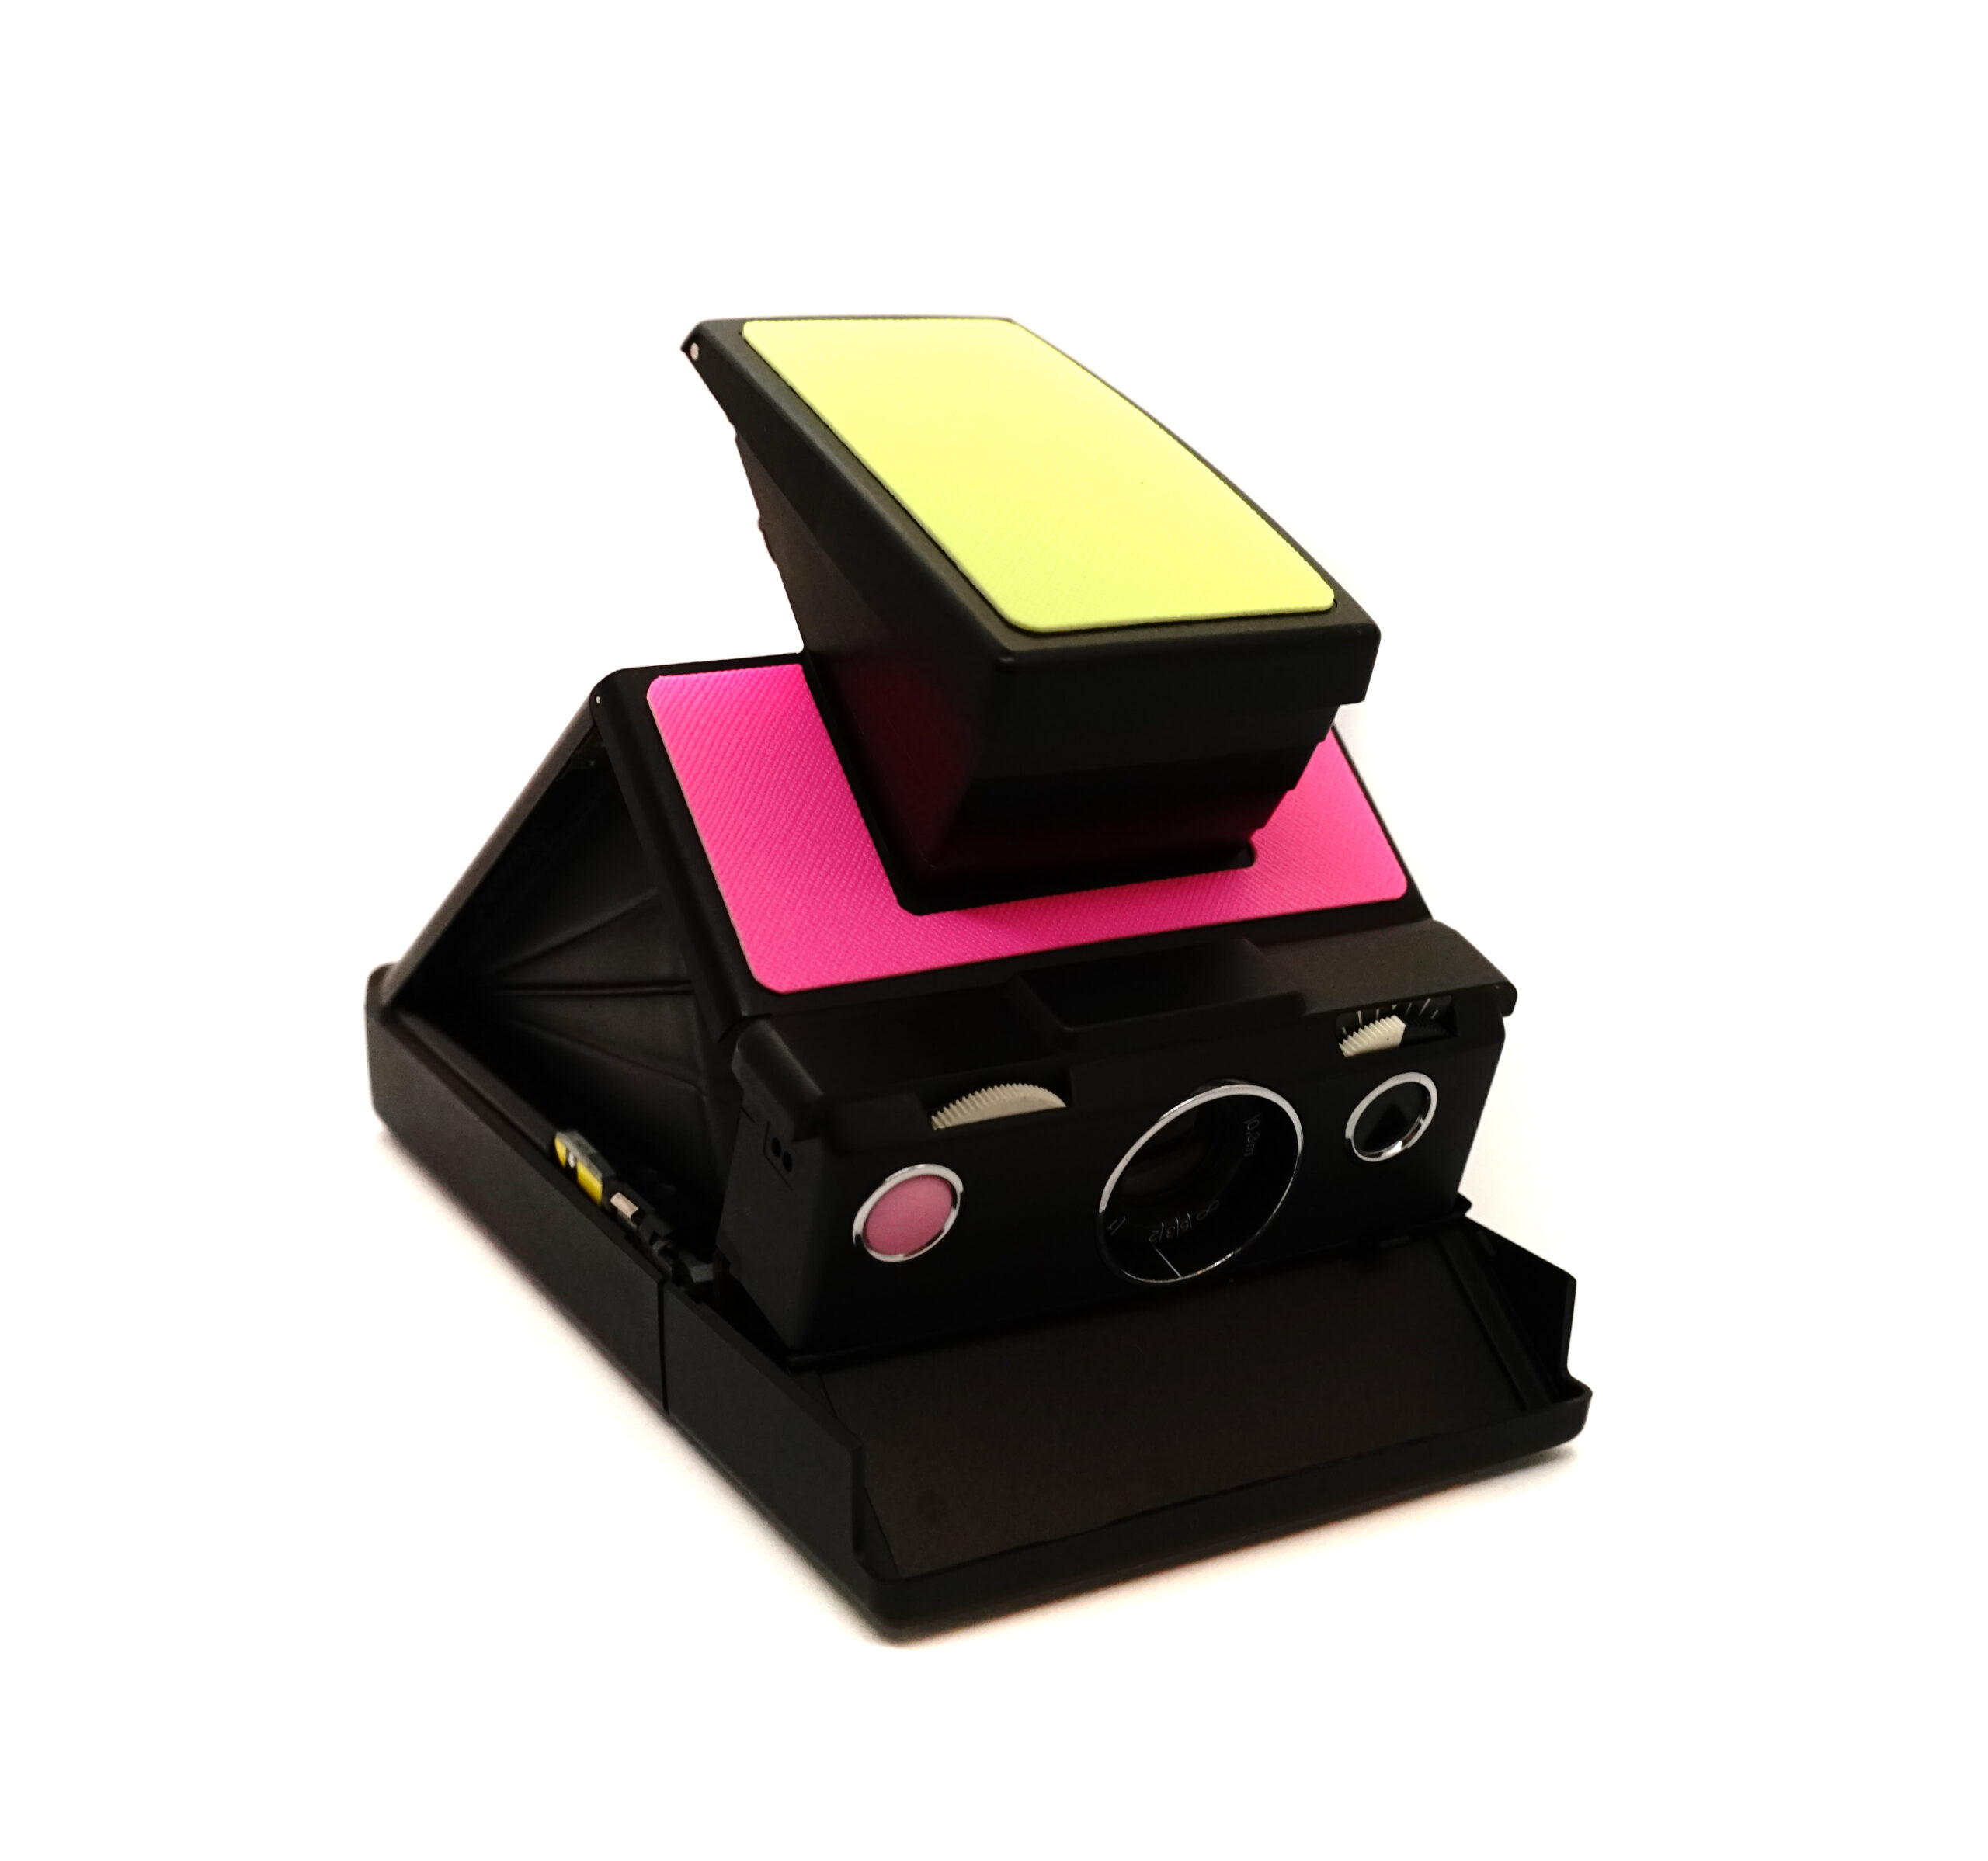 Aparat Polaroid SX-70 neon